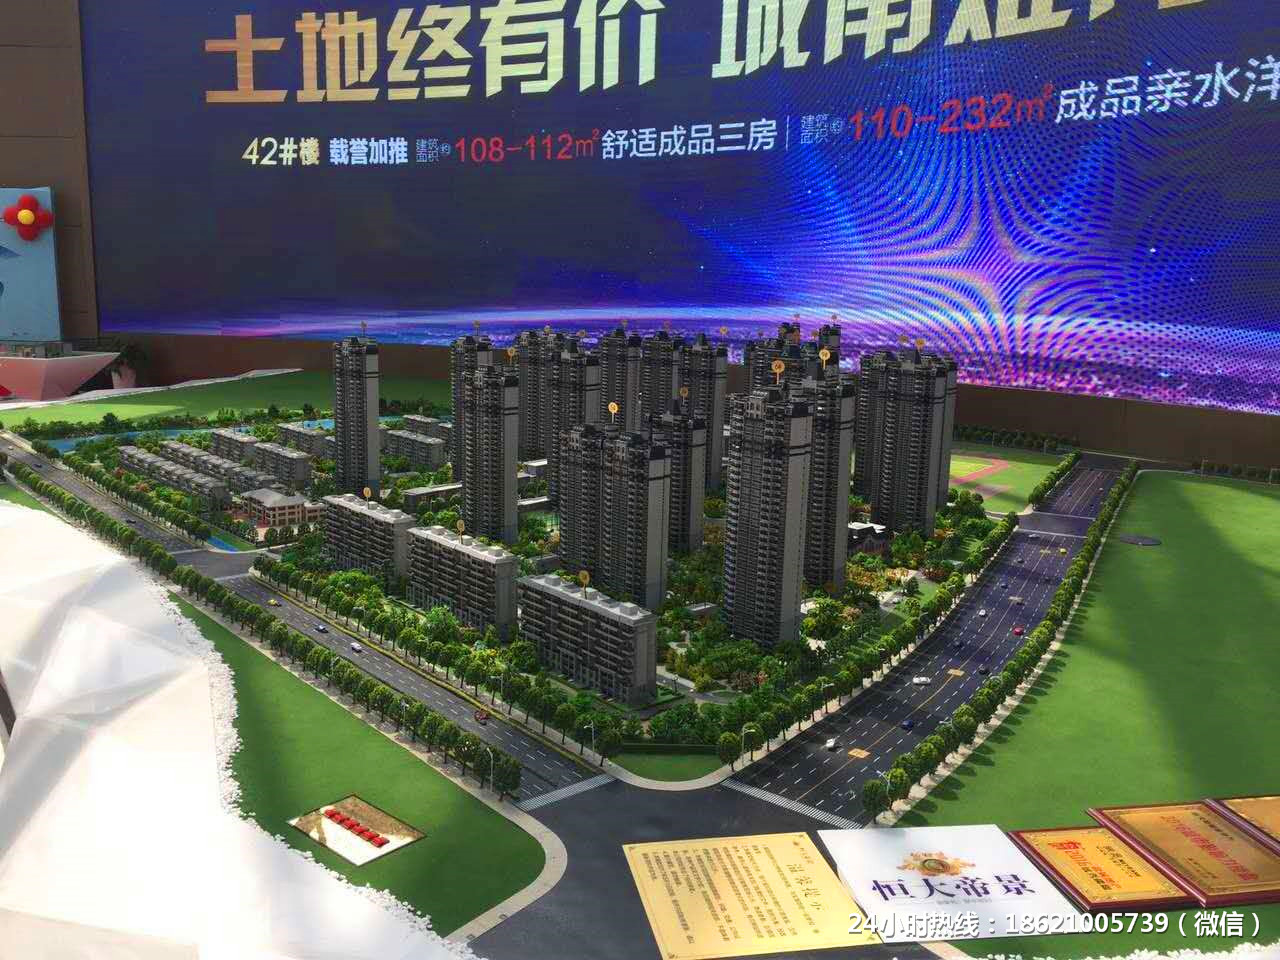 上海模型公司沙盘常见的种类